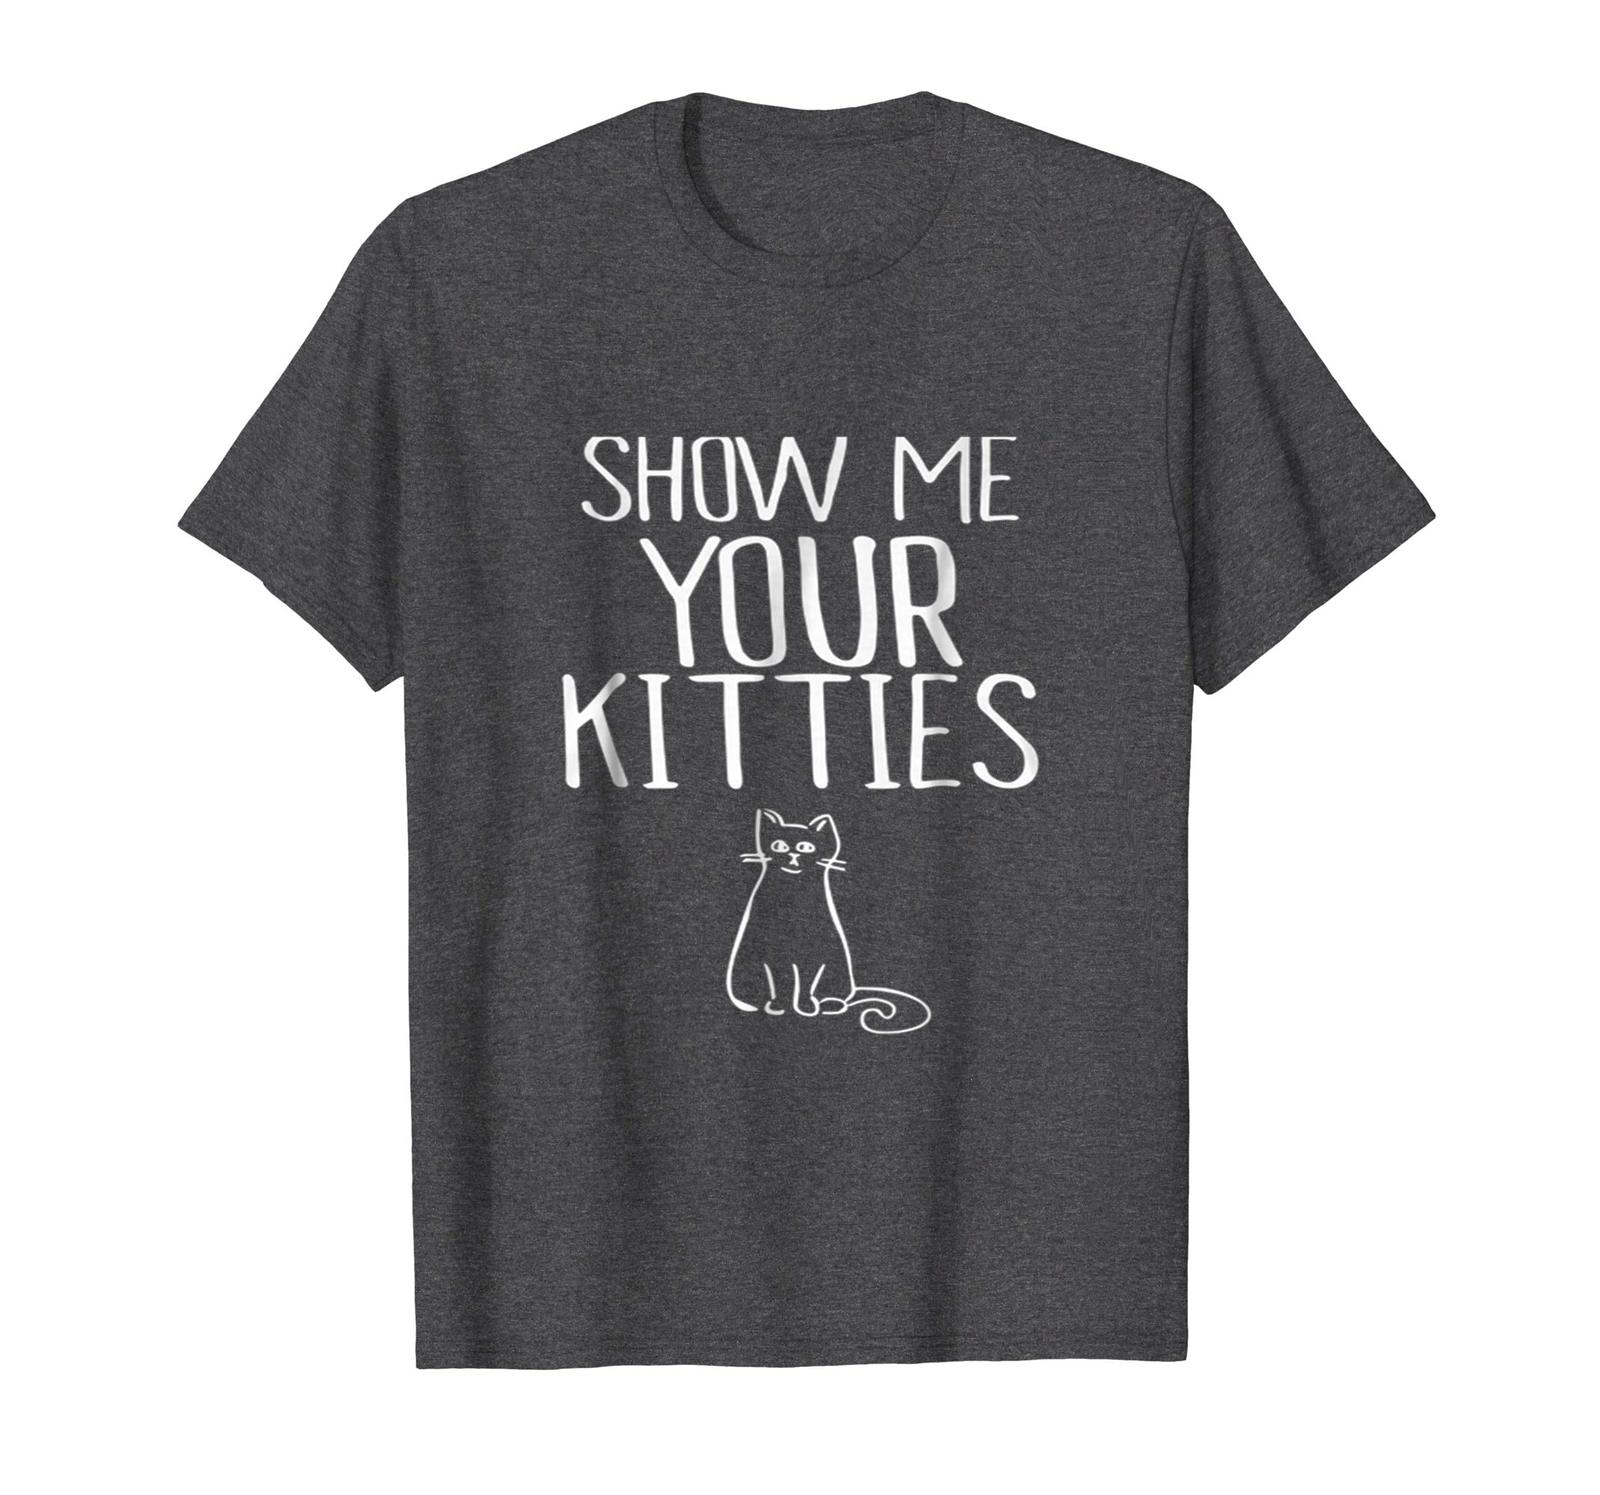 New Shirts - Show Me Your Kitties TShirt Funny New TShirt Men - T-Shirts